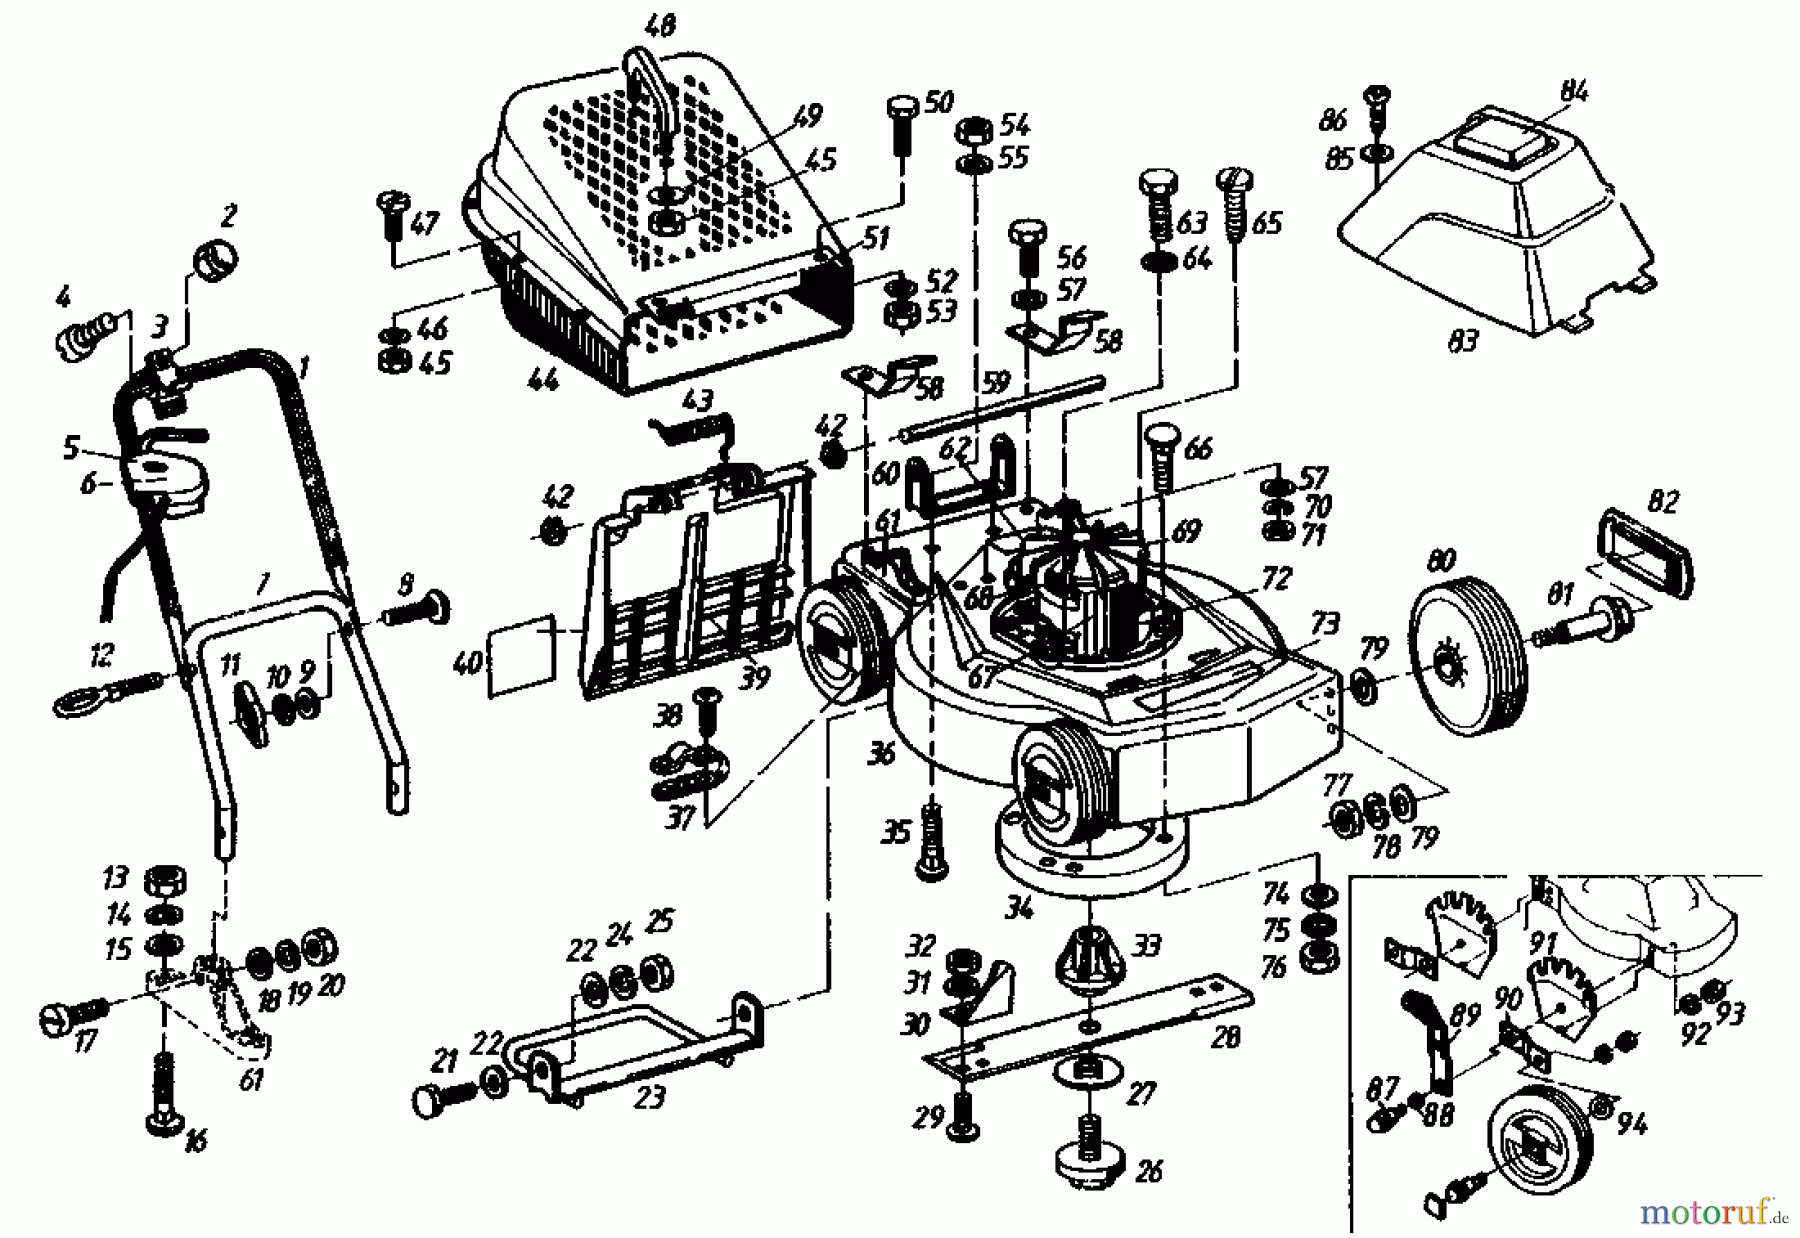  Gutbrod Tondeuse électrique TURBO 45 E 02875.01  (1985) Machine de base